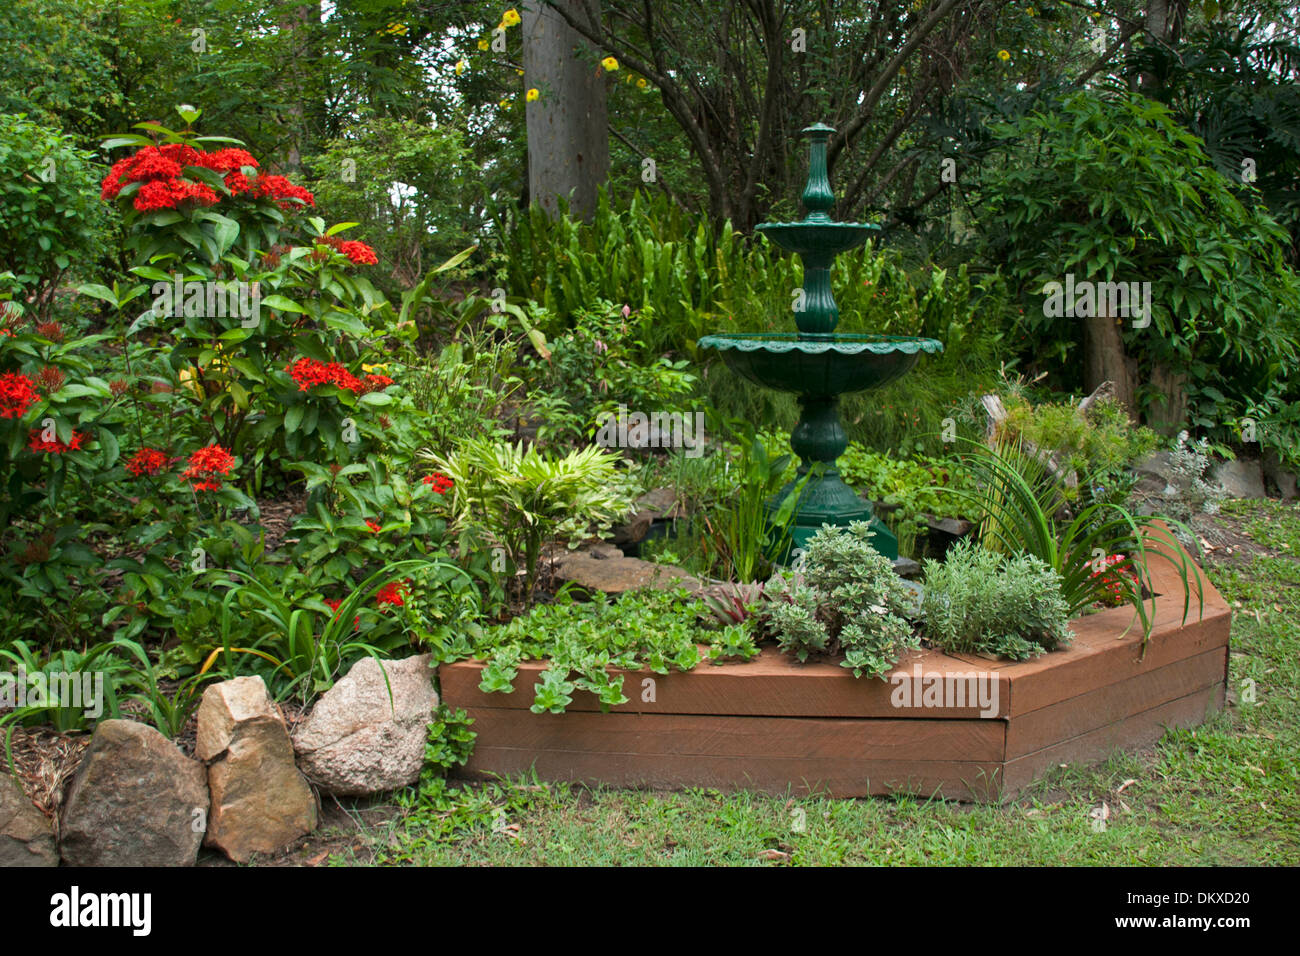 Giardino sub-tropicale con un fitto di alberi, arbusti e fiori colorati che circondano la funzione acqua / laghetto ornato di fontana Foto Stock